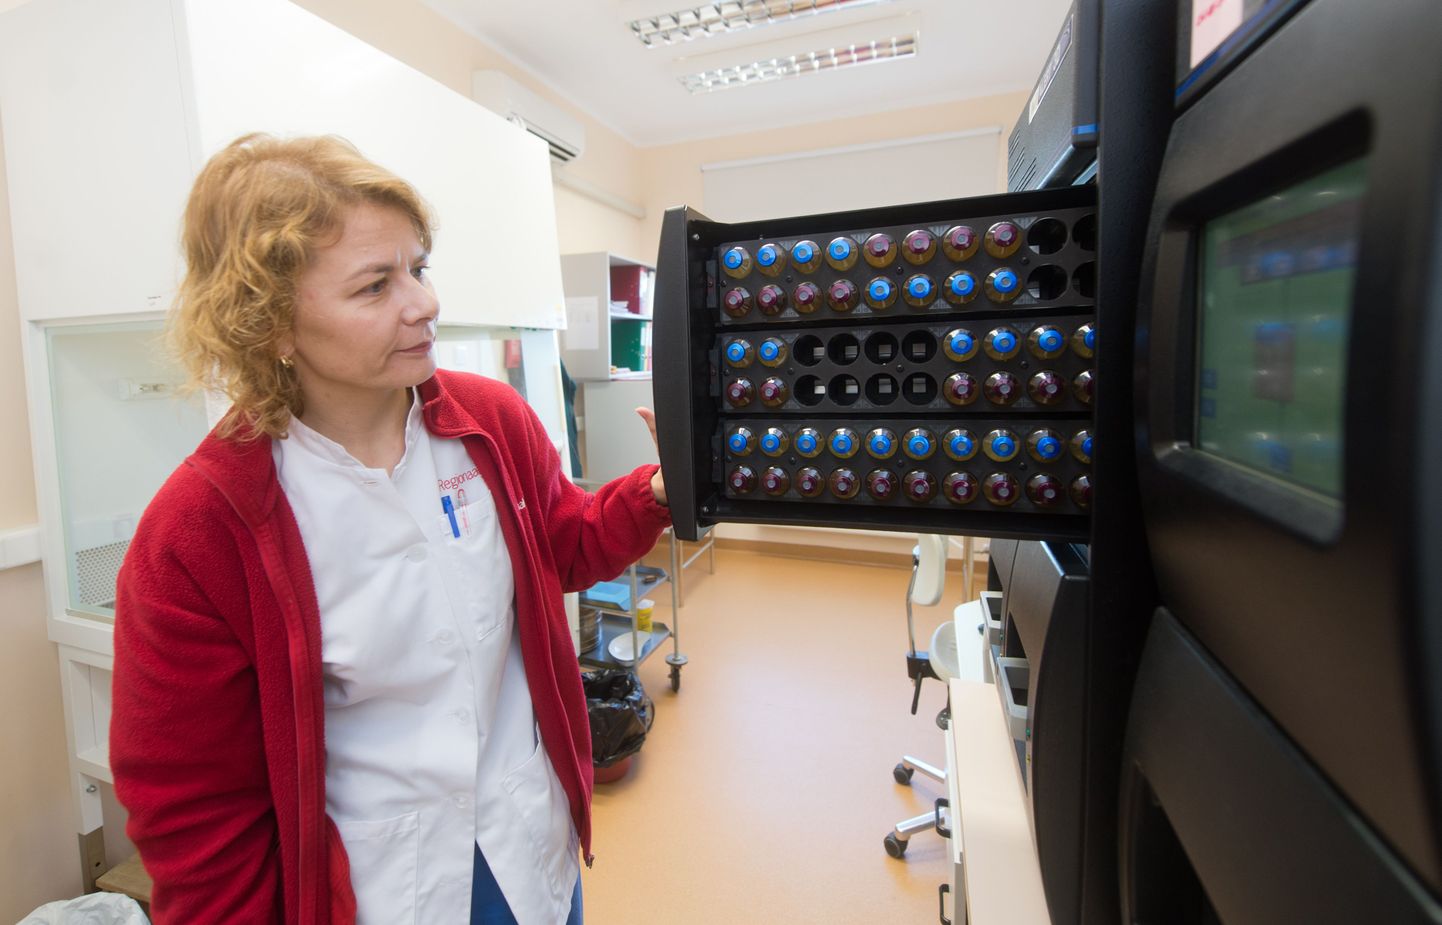 Põhja-Eesti Regionaalhaigla verekeskuse kvaliteedikontrolli osakonna peaspetsialist Aili Kallastu näitab doonoriverd analüüsivaid seadmeid.